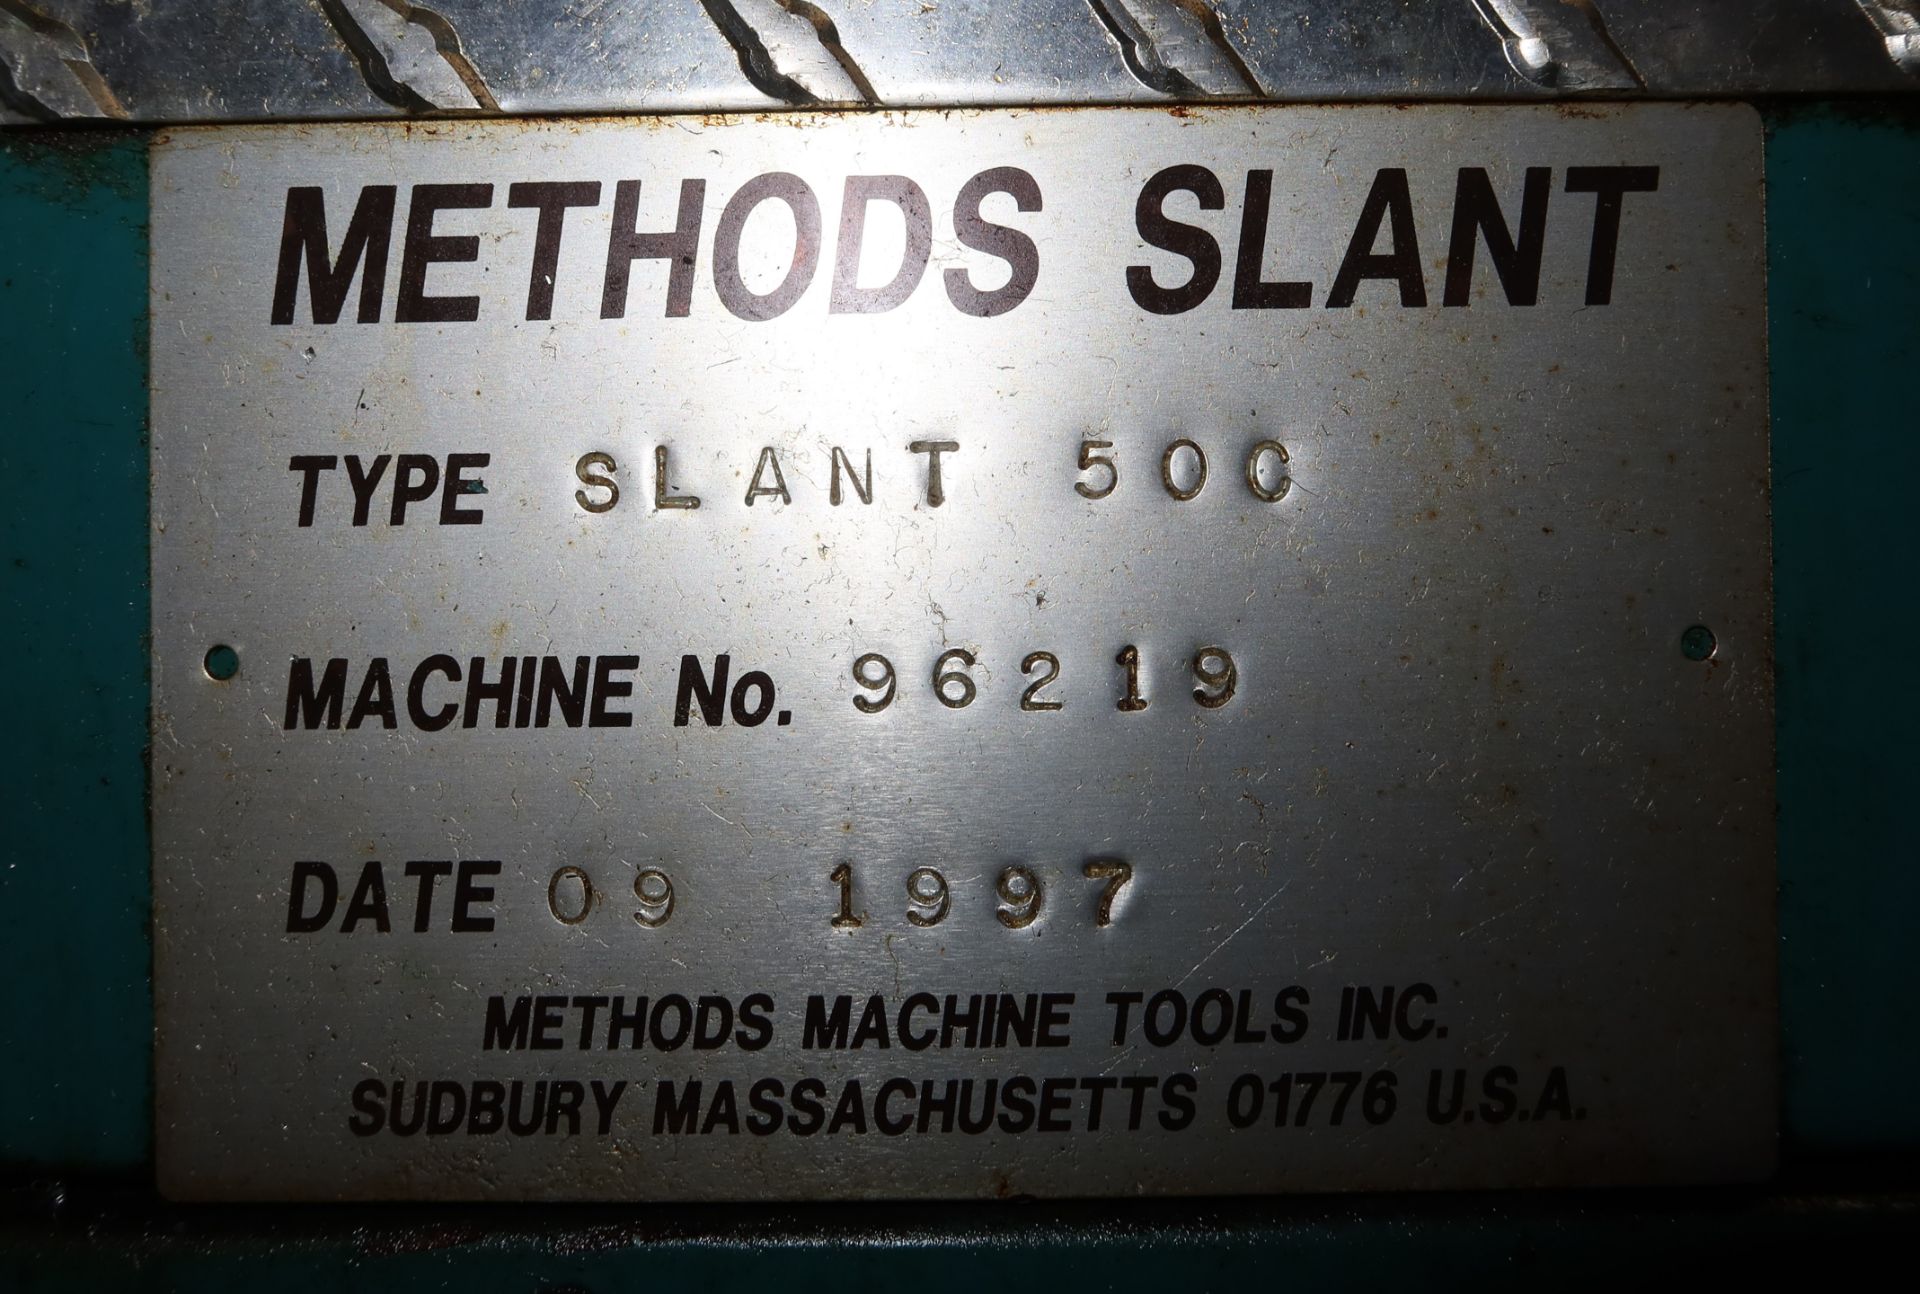 1997 METHODS SLANT 50C CNC LATHE, YASNAC CONTROL, SN. 96219 - Image 7 of 7